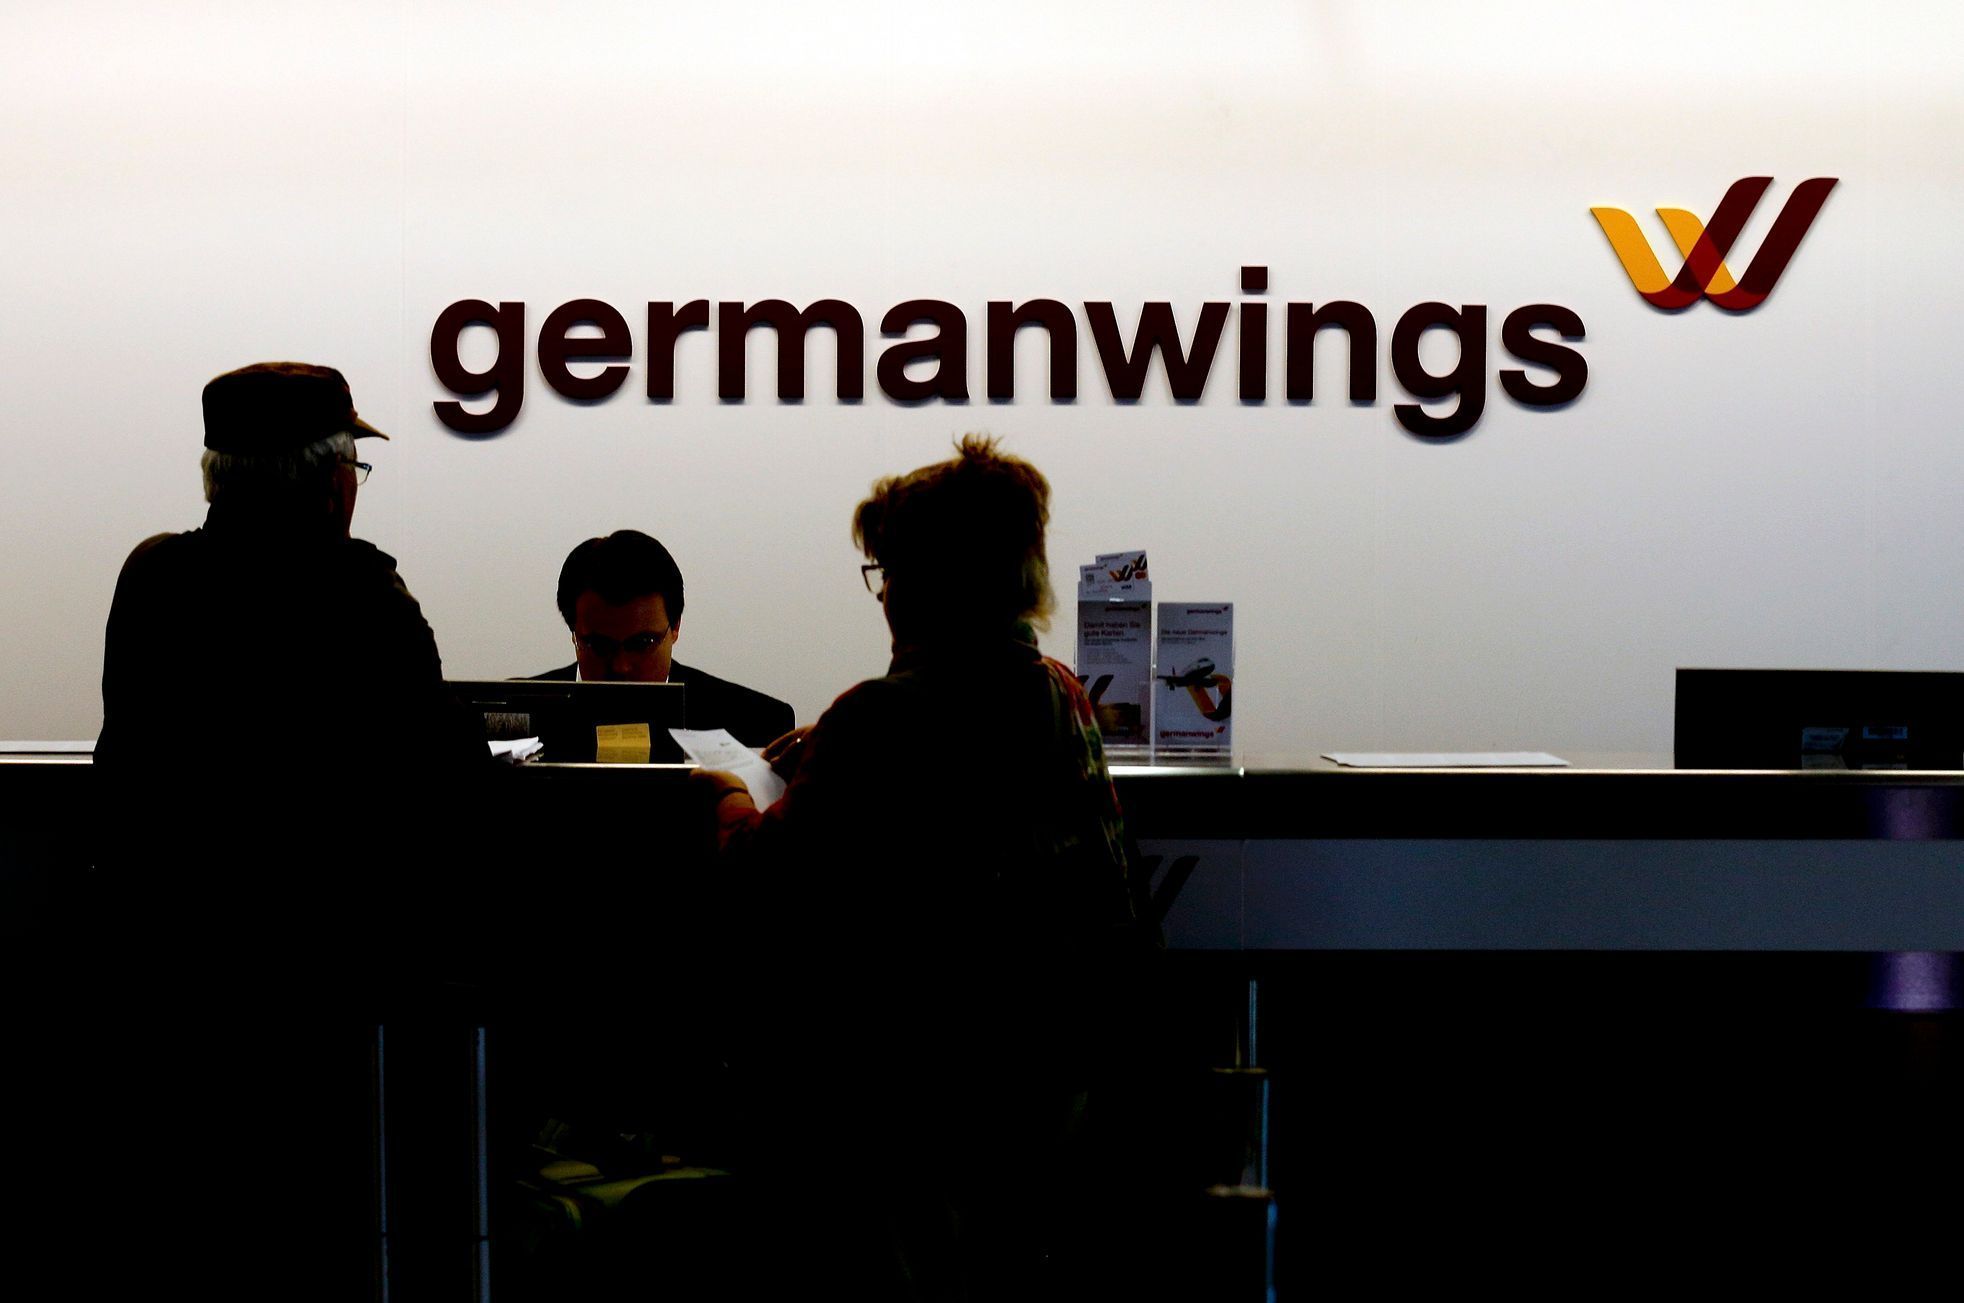 Přepážka Germanwings na letišti v Kolíně nad Rýnem